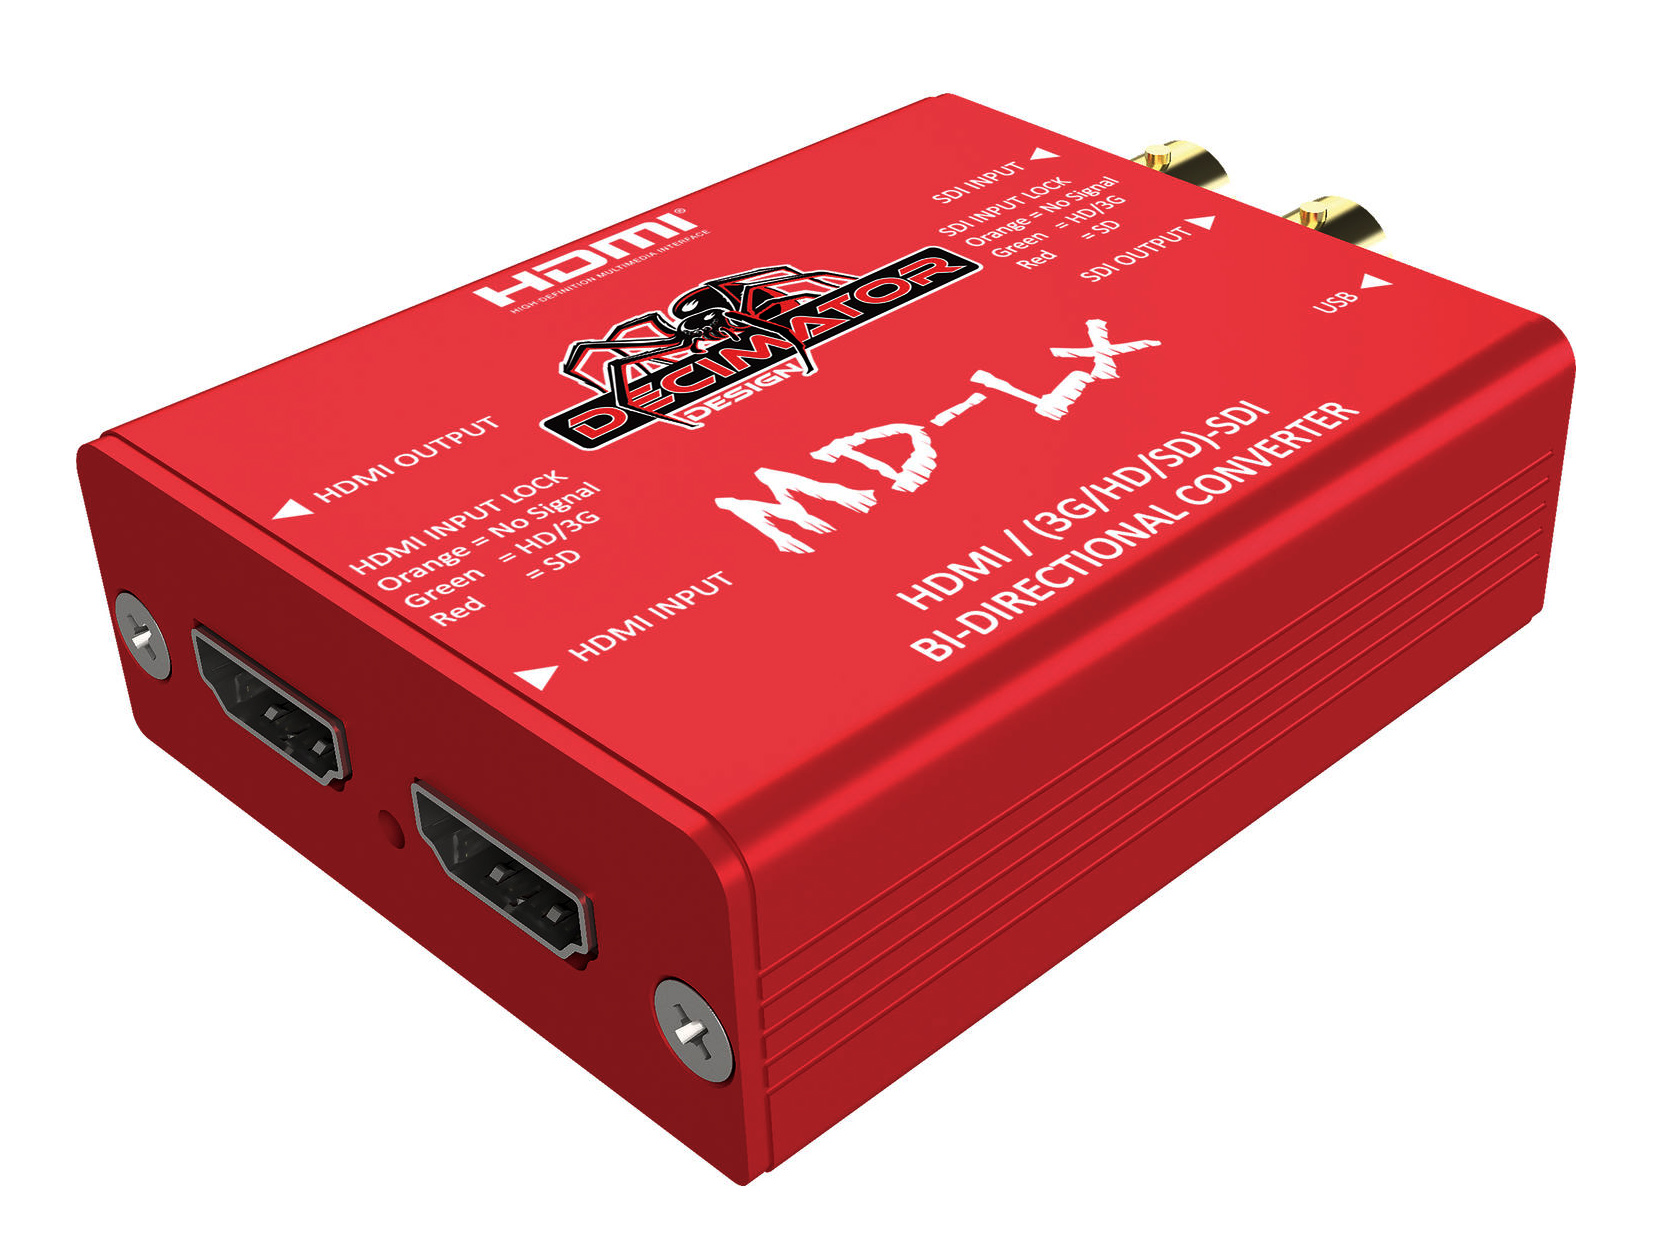 Conversor HDMI-SDI DECIMATOR MD-LX